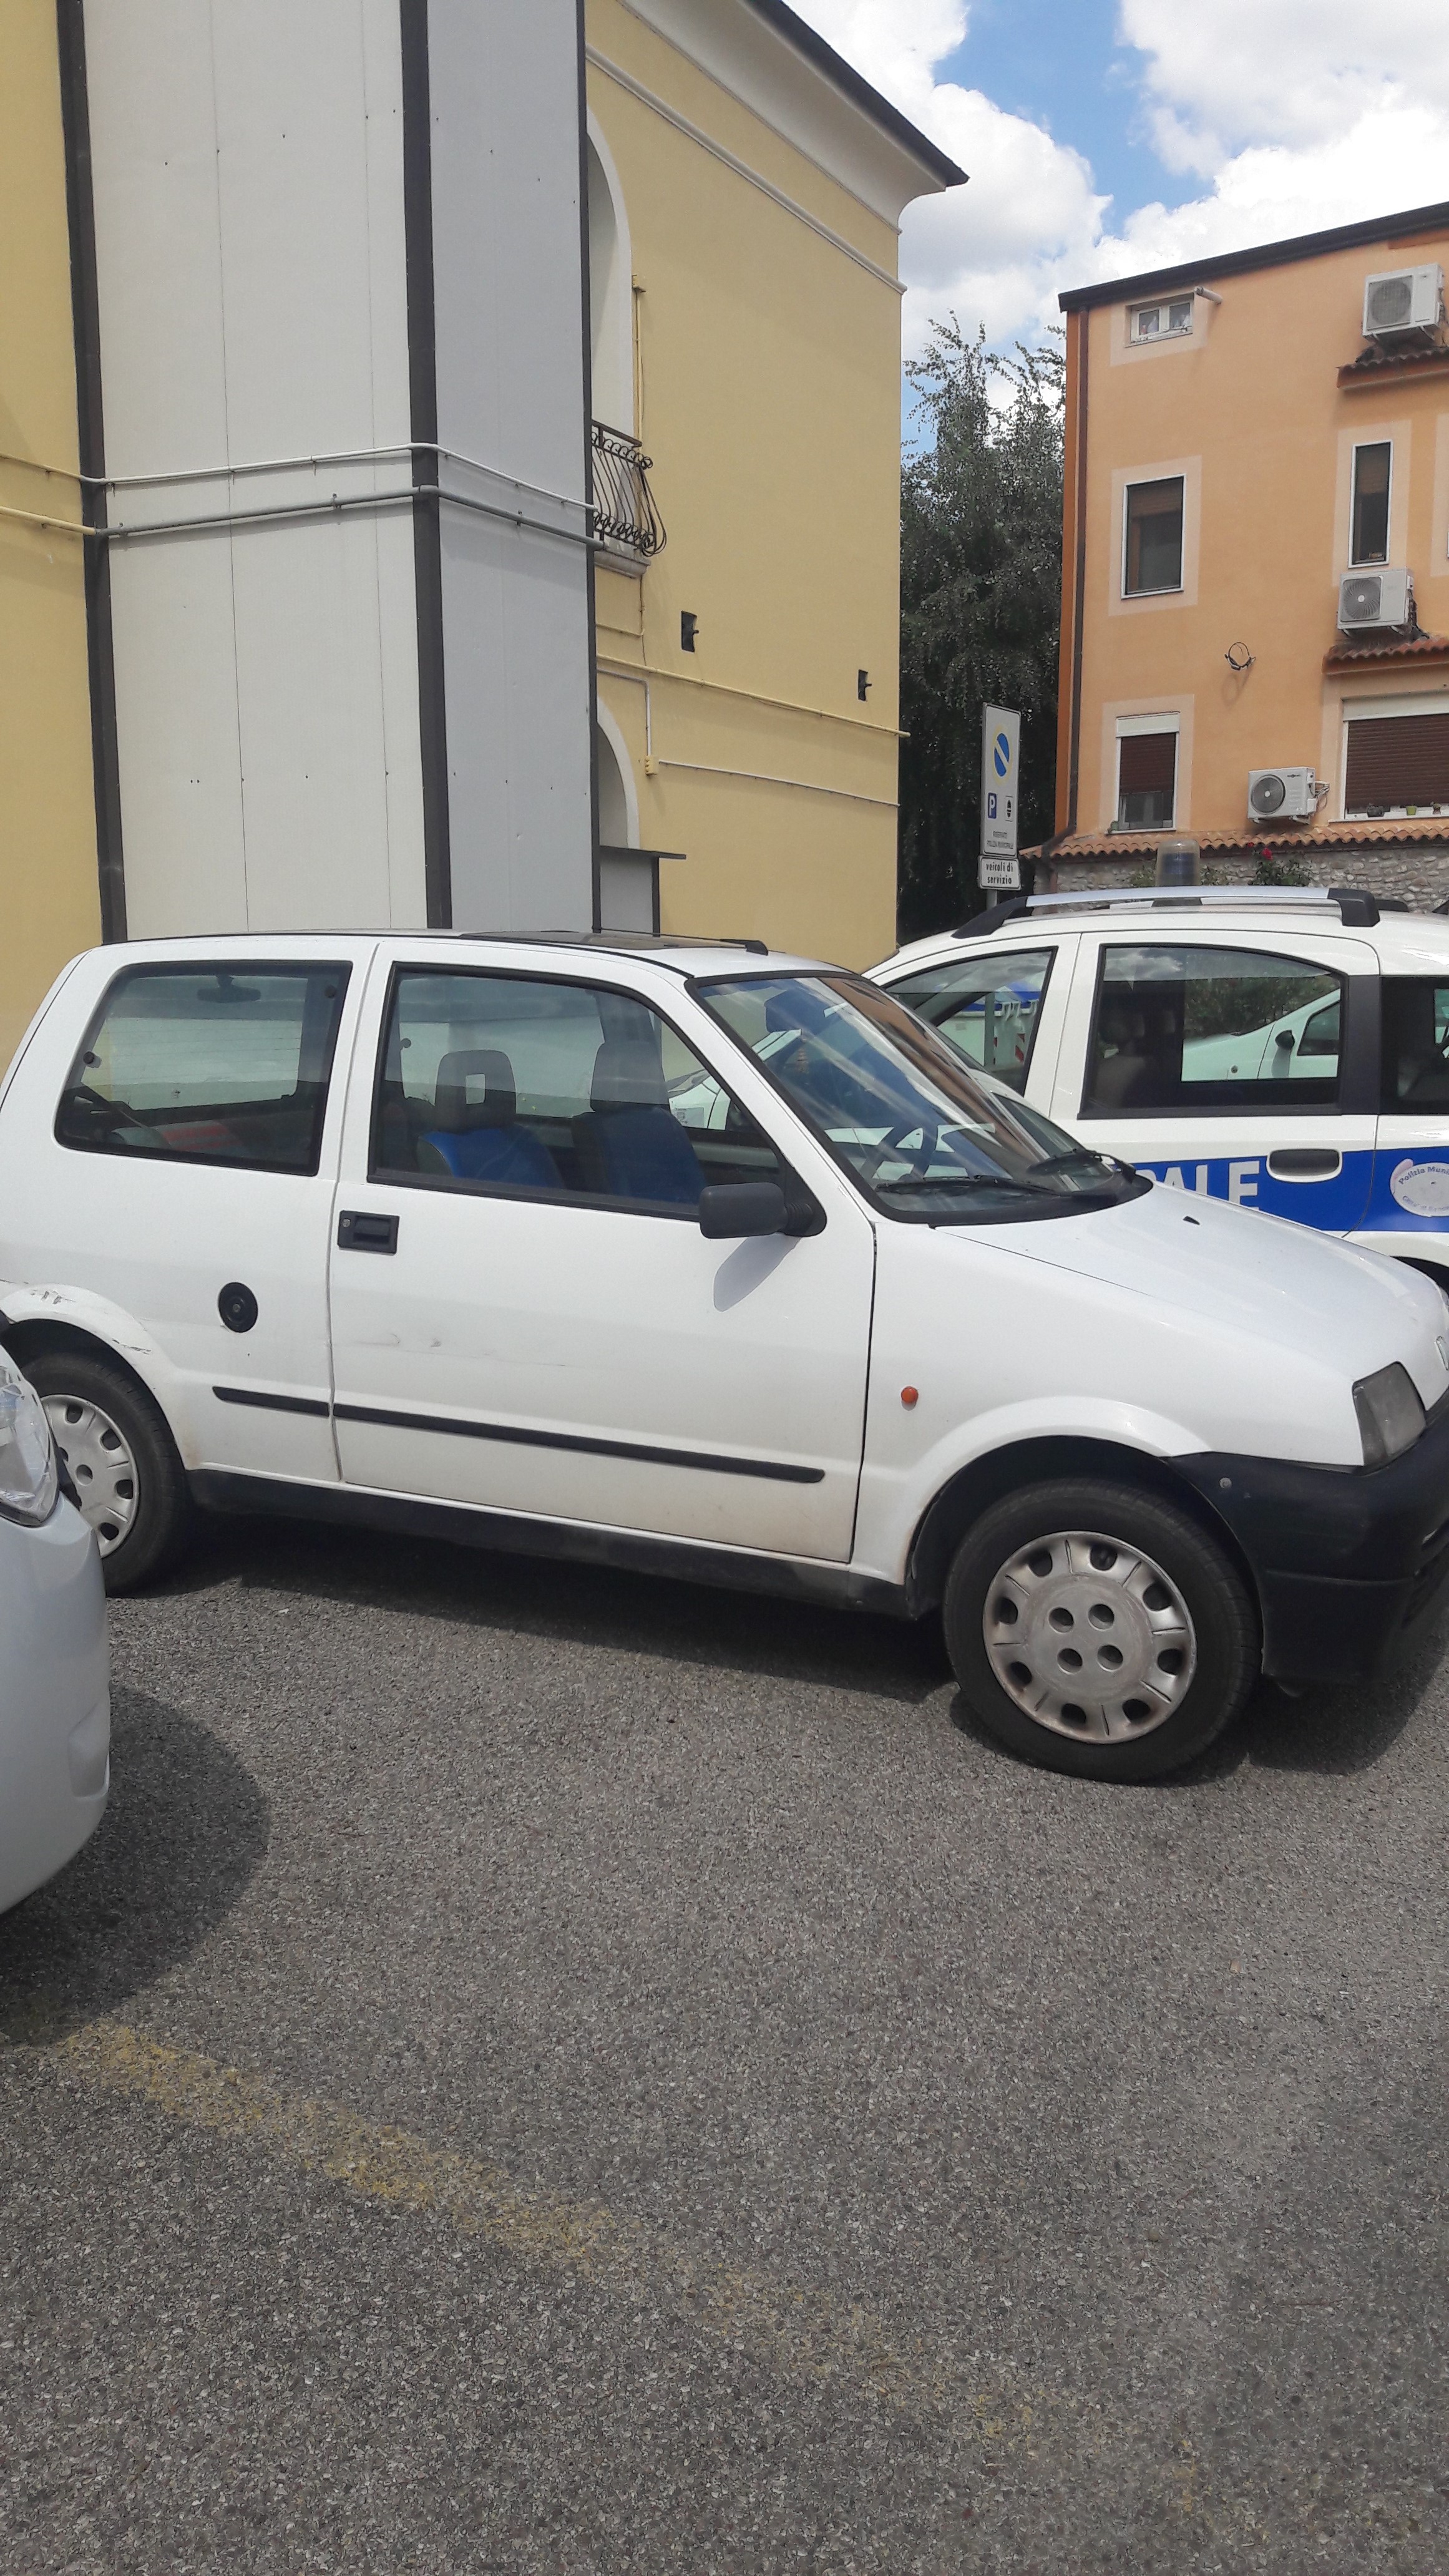 Ritrovata a Benevento auto rubata a Barletta